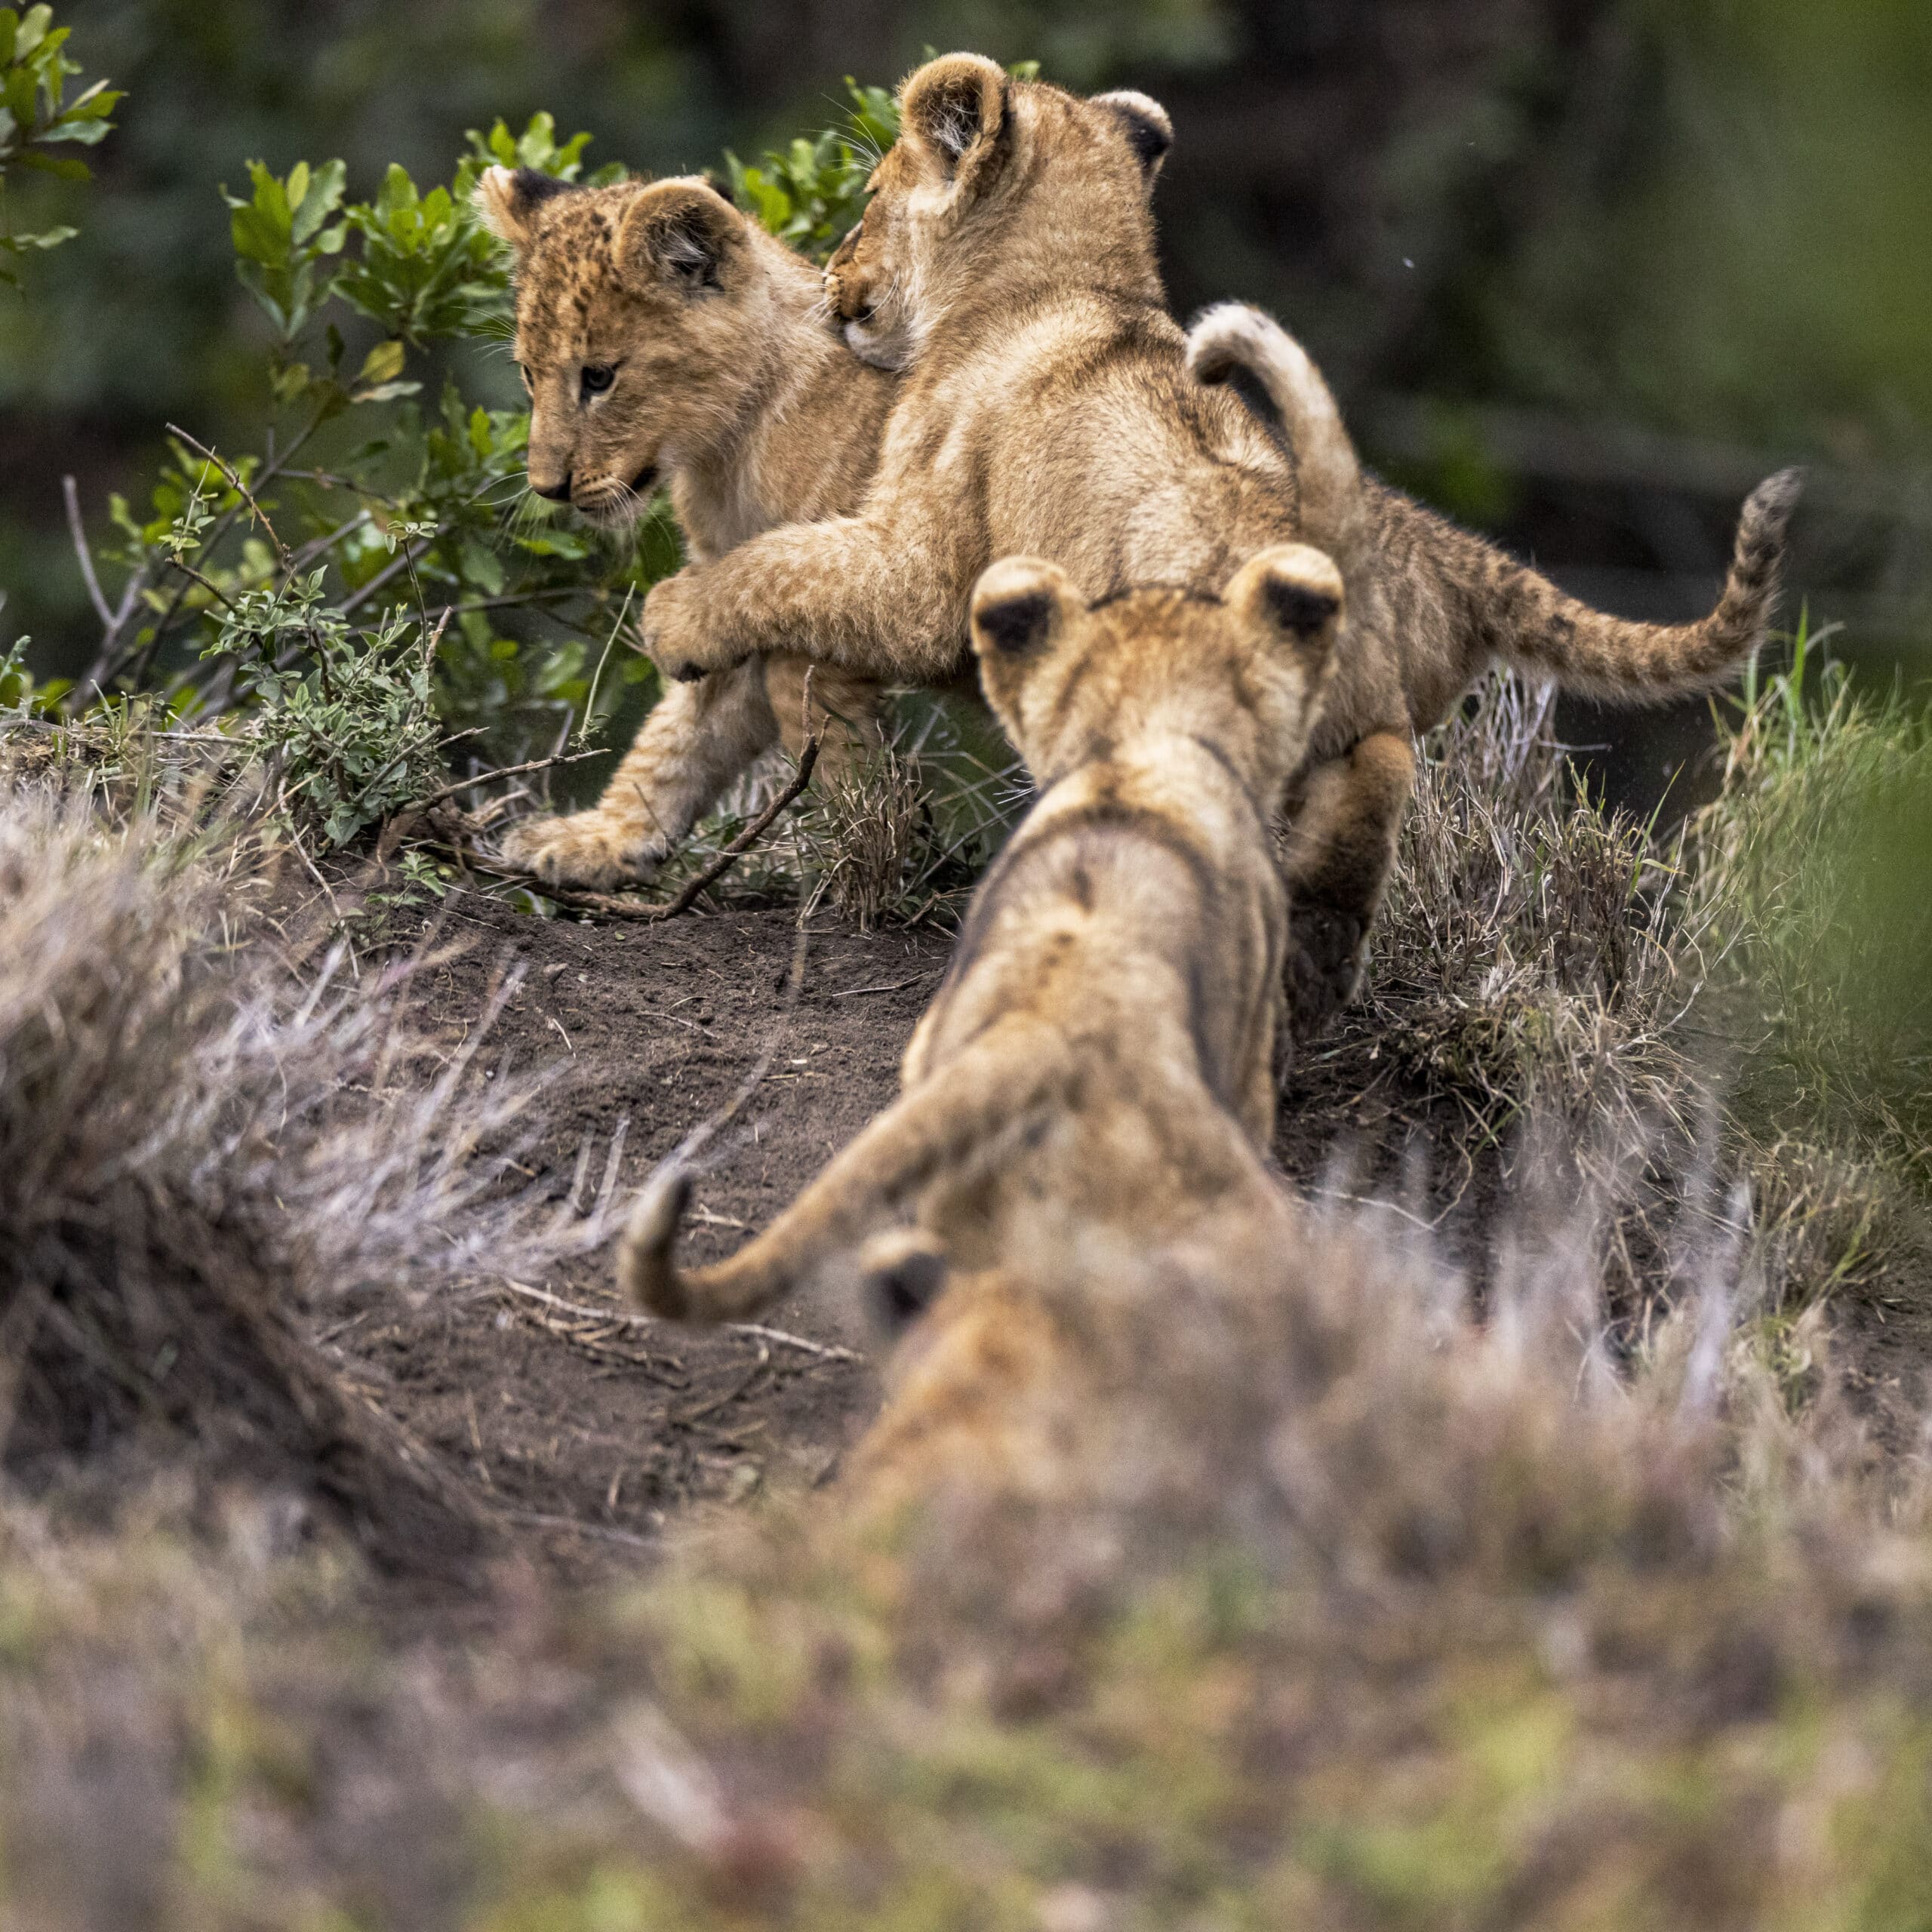 Drei Löwenjunge interagieren spielerisch in einer natürlichen Umgebung. Einer springt auf den anderen zu, während der dritte zusieht. Sie sind von grünem Laub und Erde umgeben. © Fotografie Tomas Rodriguez